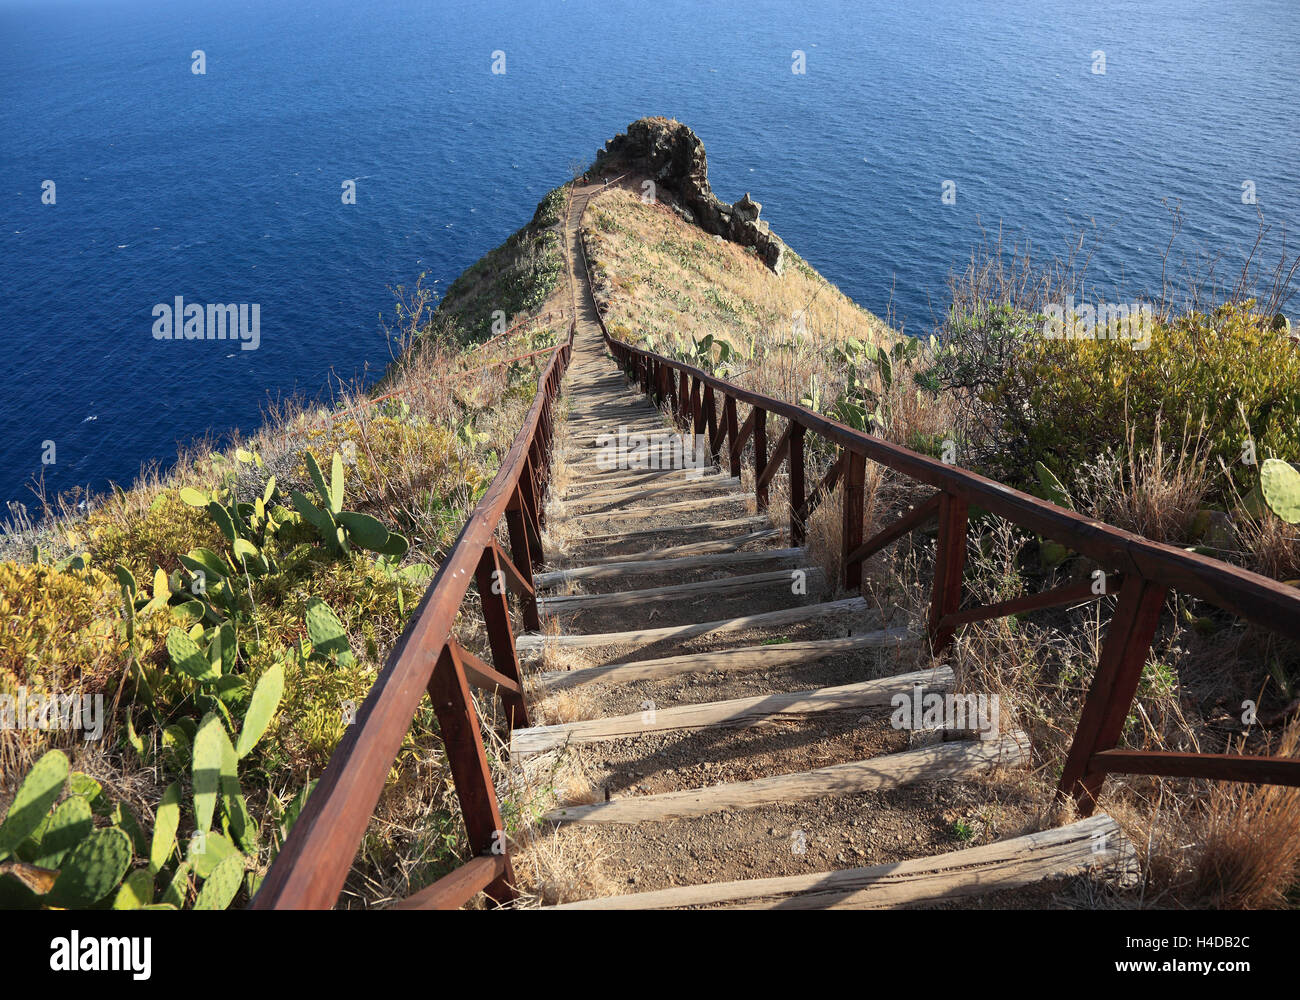 Île de Madère, à la cape avec Garajau Canico, près de la mer, des escaliers Banque D'Images